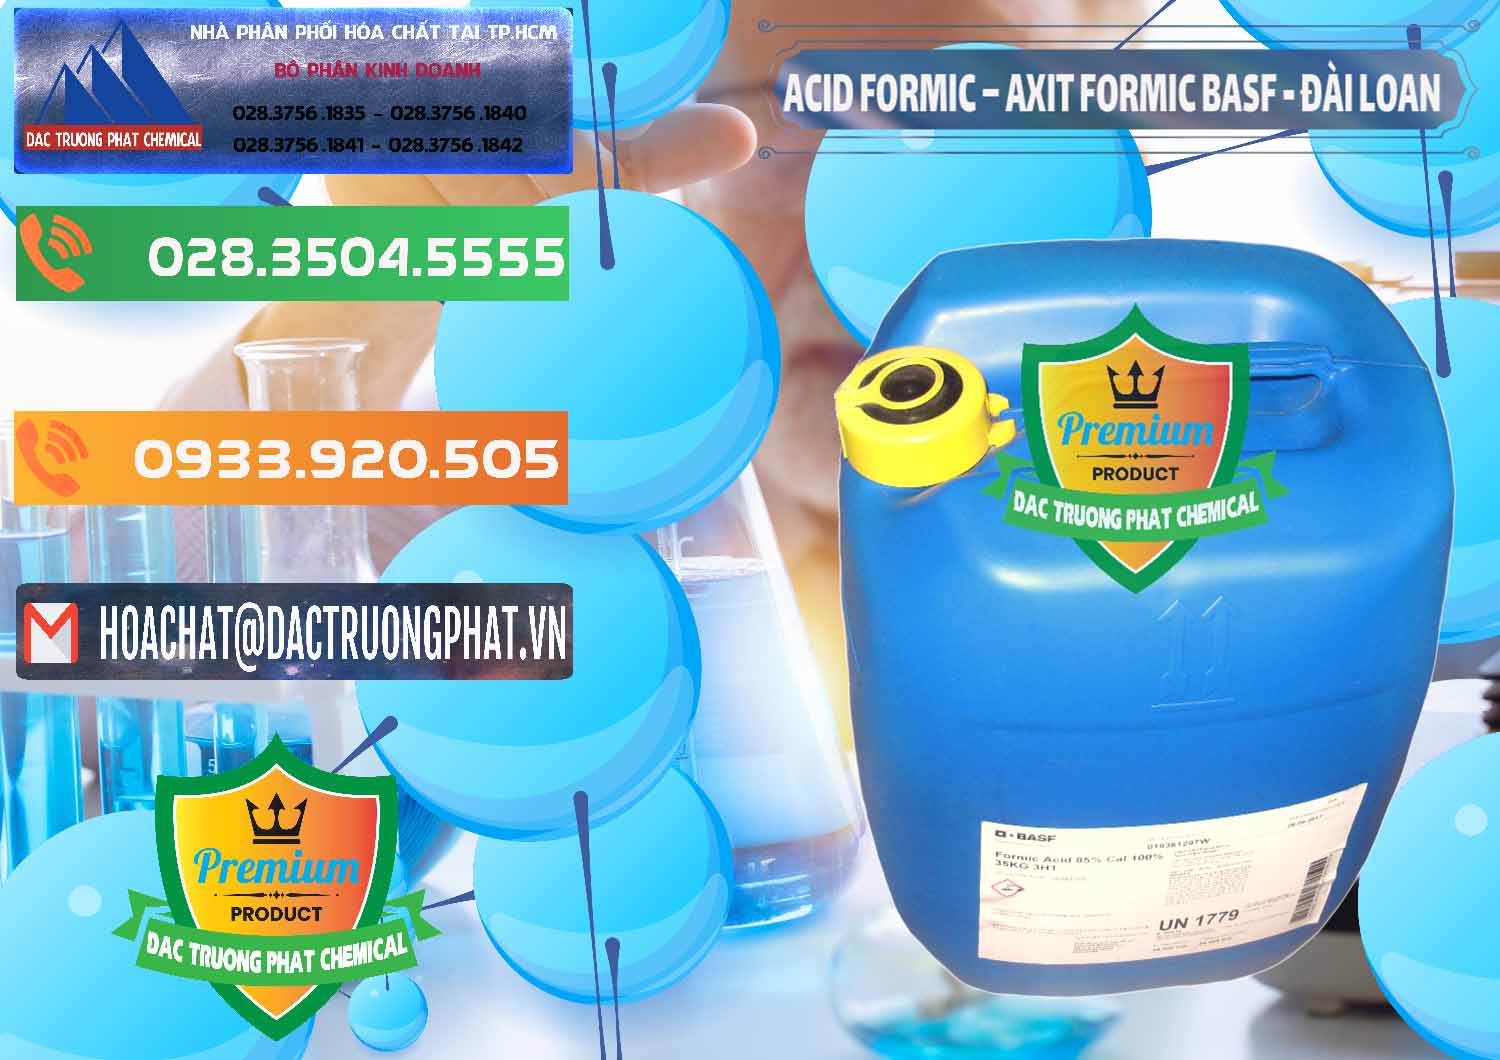 Đơn vị chuyên bán ( phân phối ) Acid Formic - Axit Formic 85% BASF Đài Loan Taiwan - 0027 - Công ty chuyên bán ( phân phối ) hóa chất tại TP.HCM - hoachatxulynuoc.com.vn